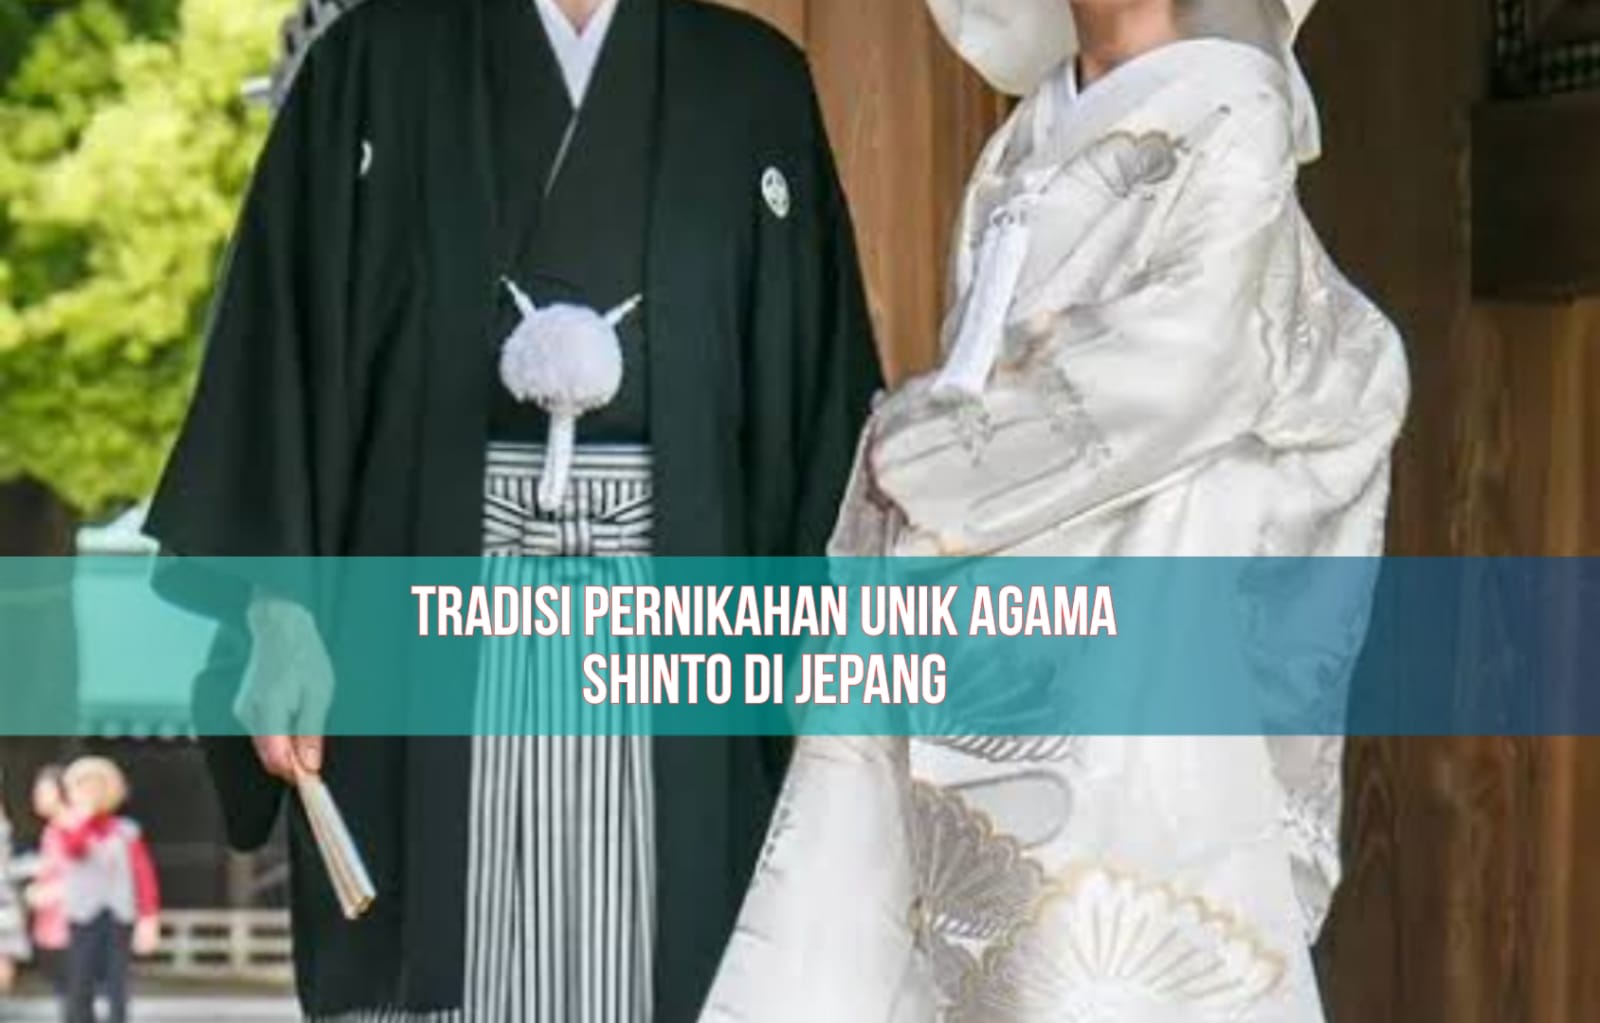 Mengenal Shinzen Shiki, Tradisi Pernikahan Unik dari Penganut Agama Shinto di Jepang